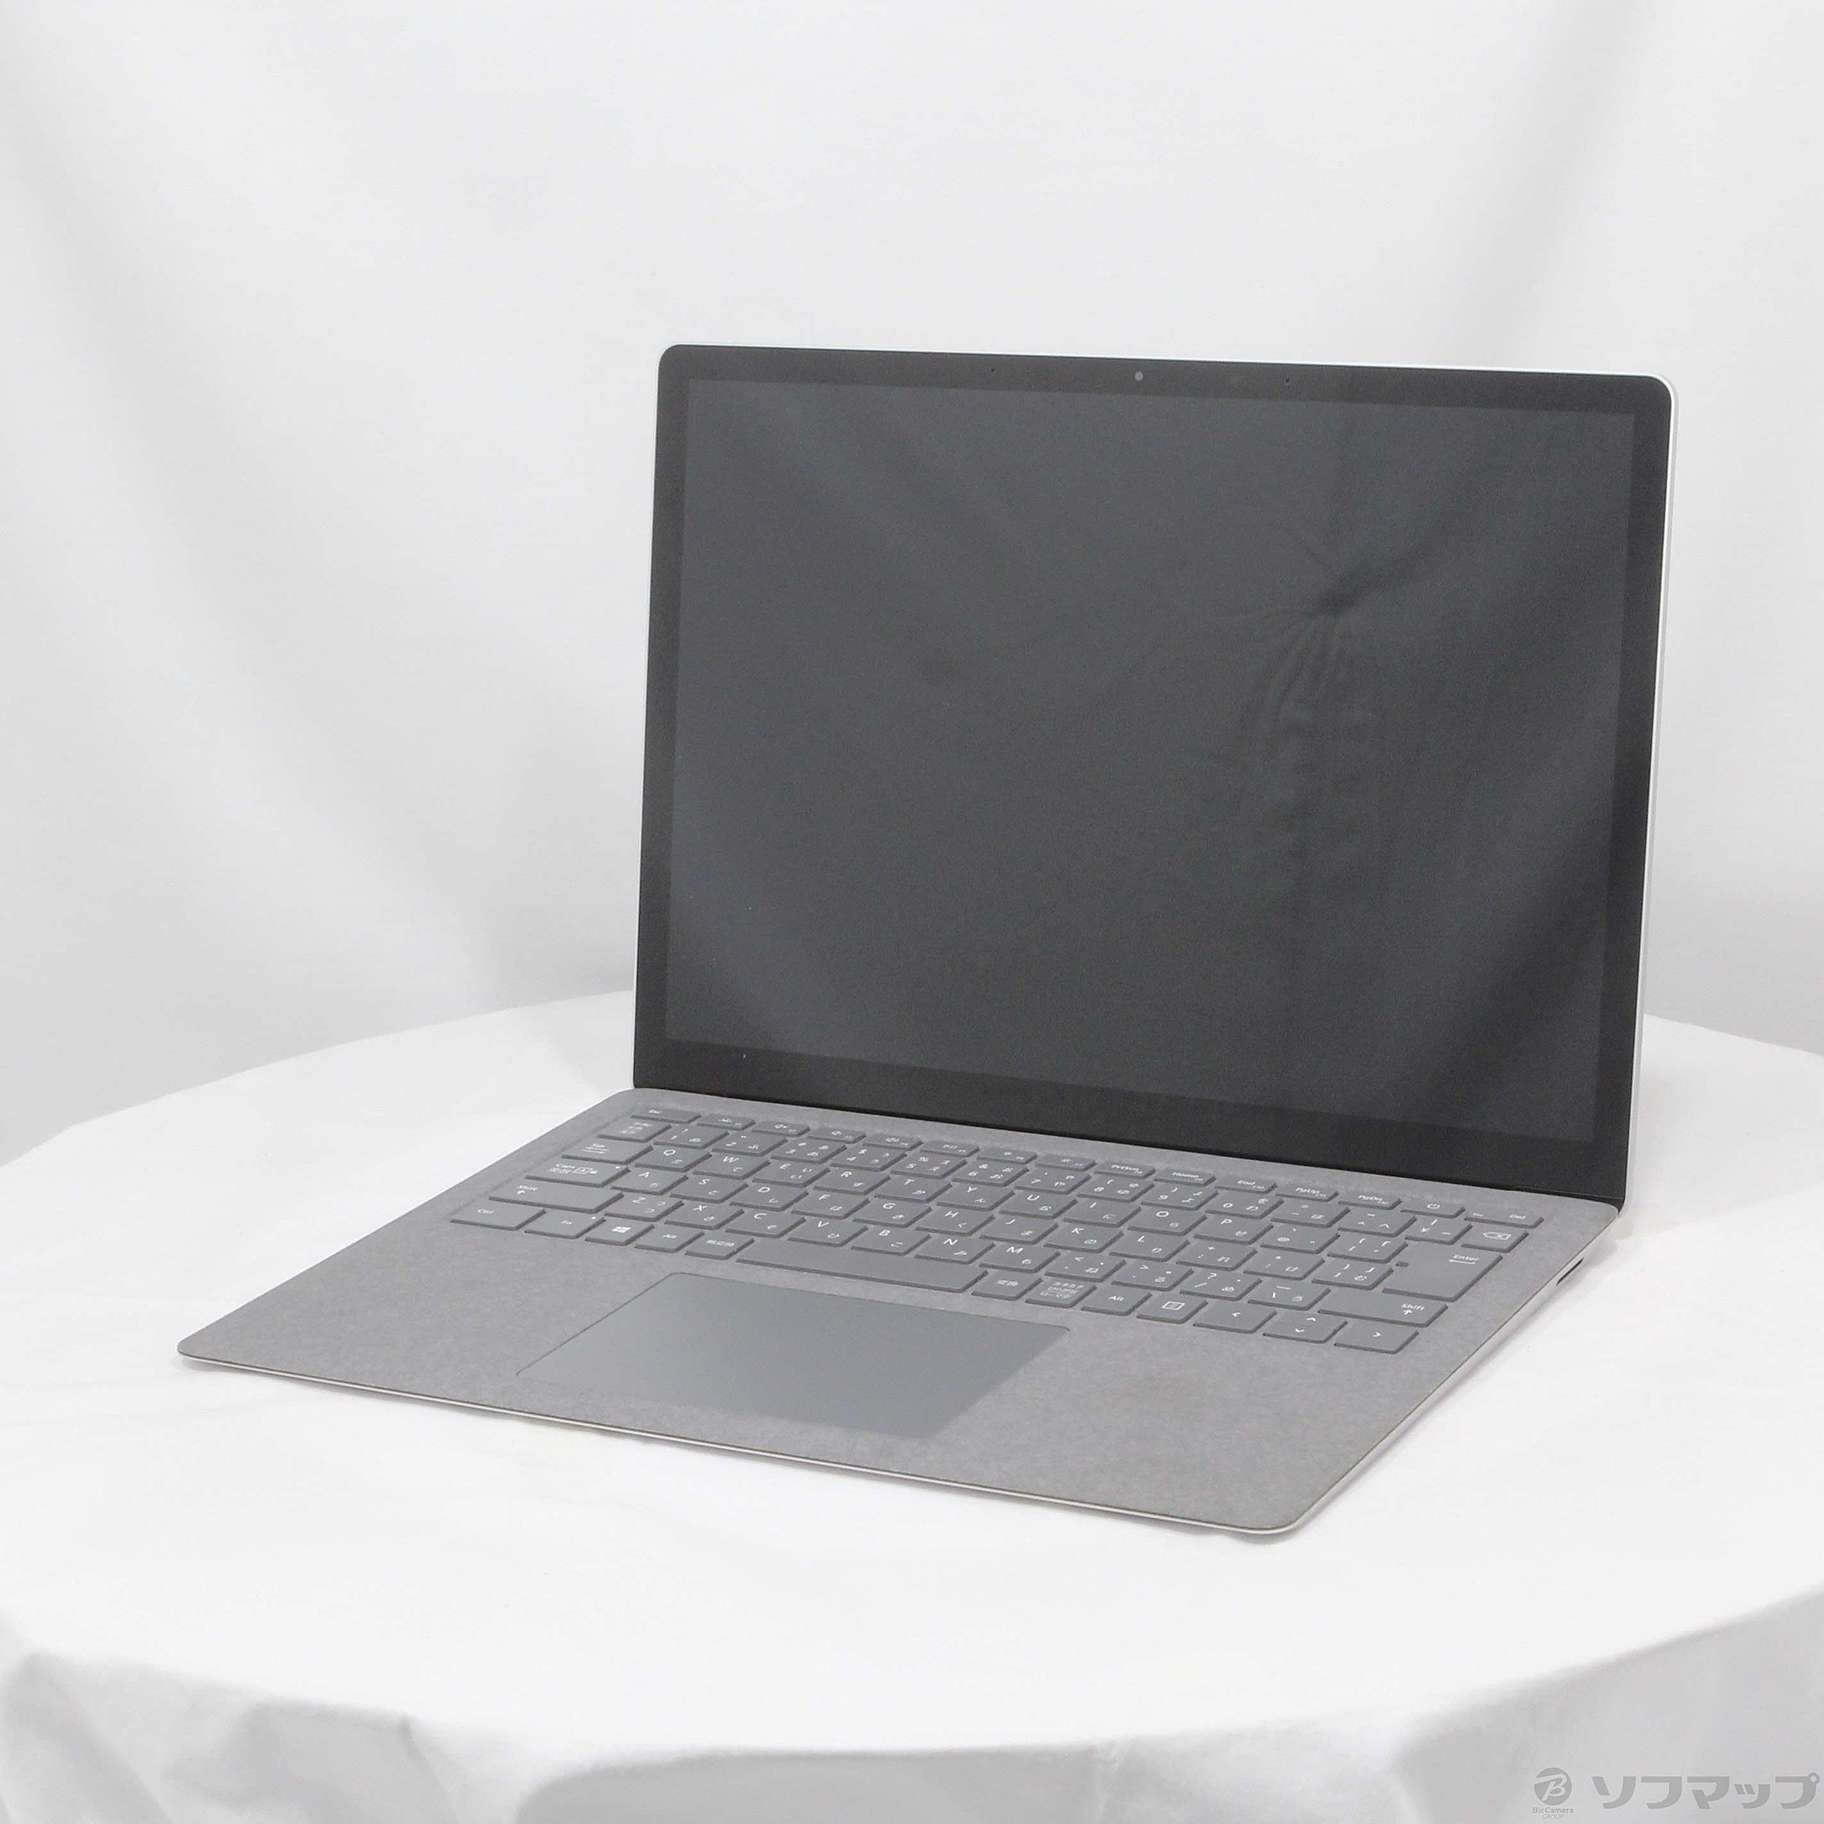 Microsoft Surface Laptop3 VGY-00018